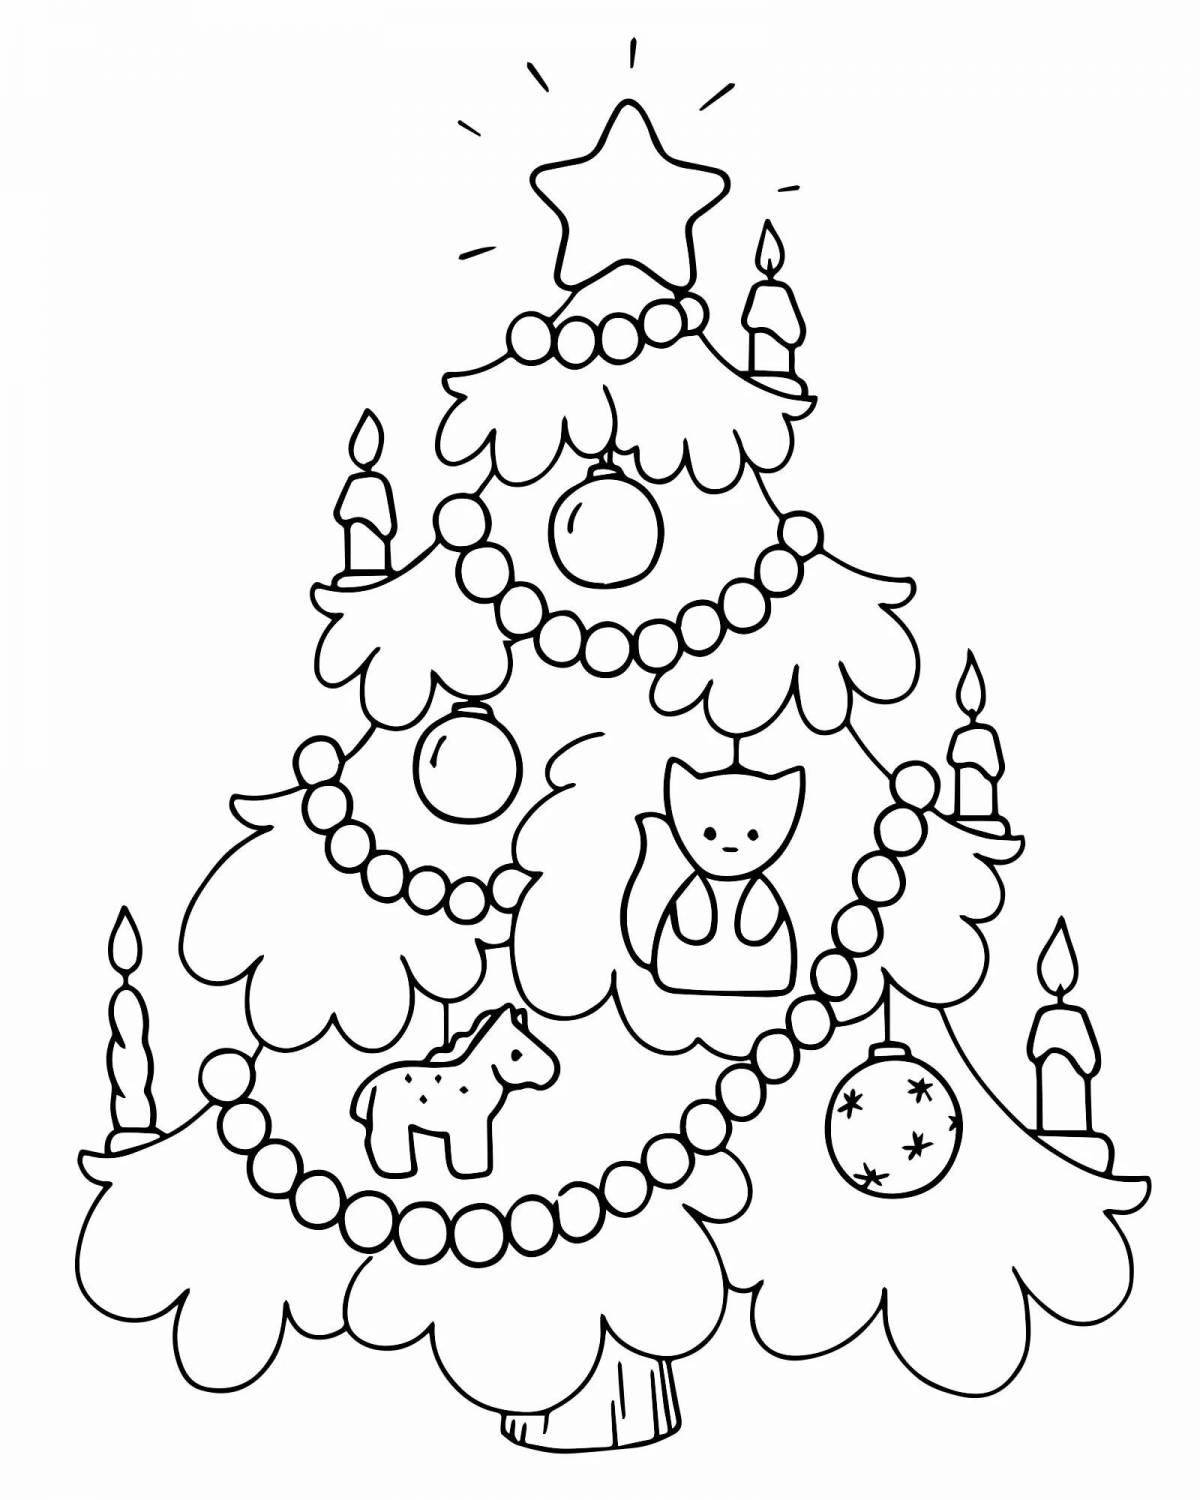 Праздничный новогодний рисунок для детей